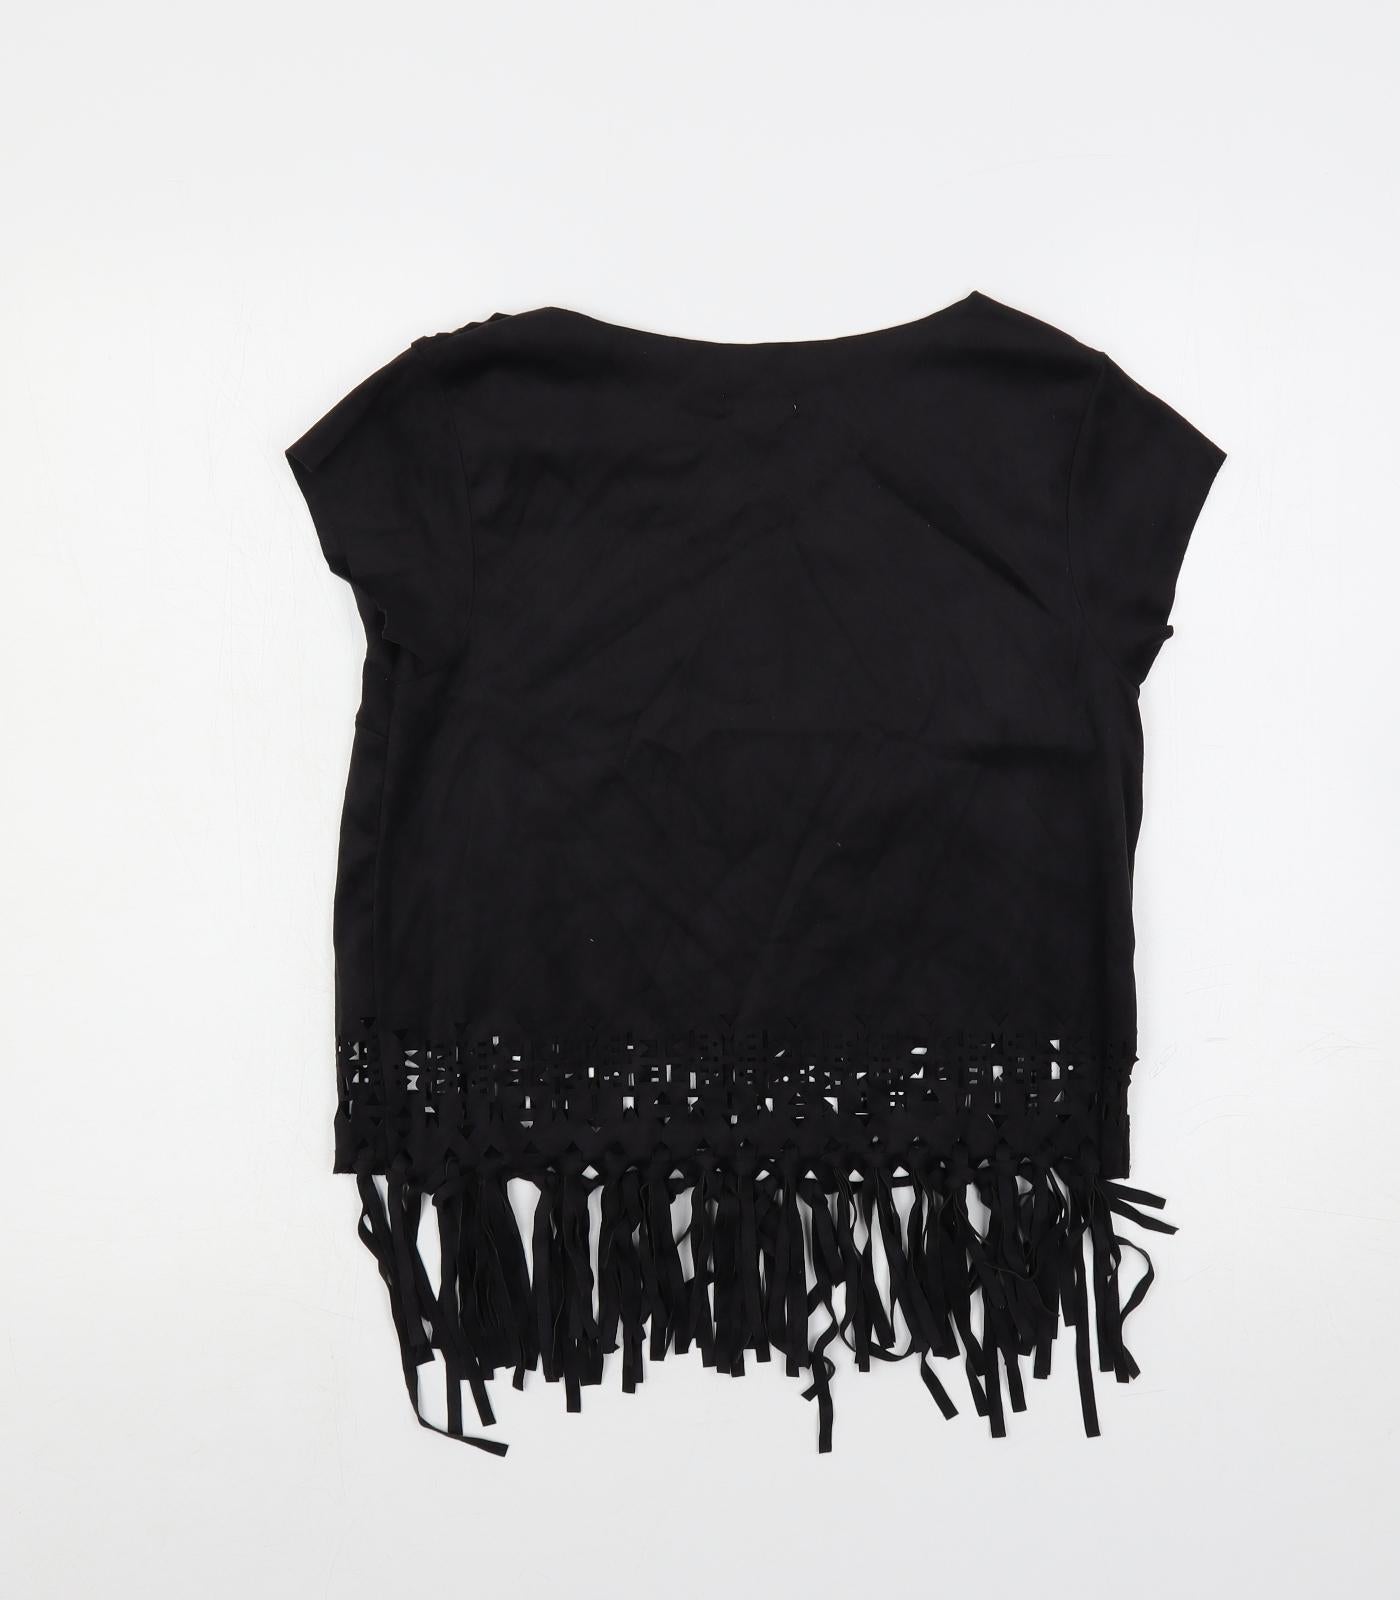 Xhilaration Womens Black Polyester Basic Blouse Size M Boat Neck - Fringe